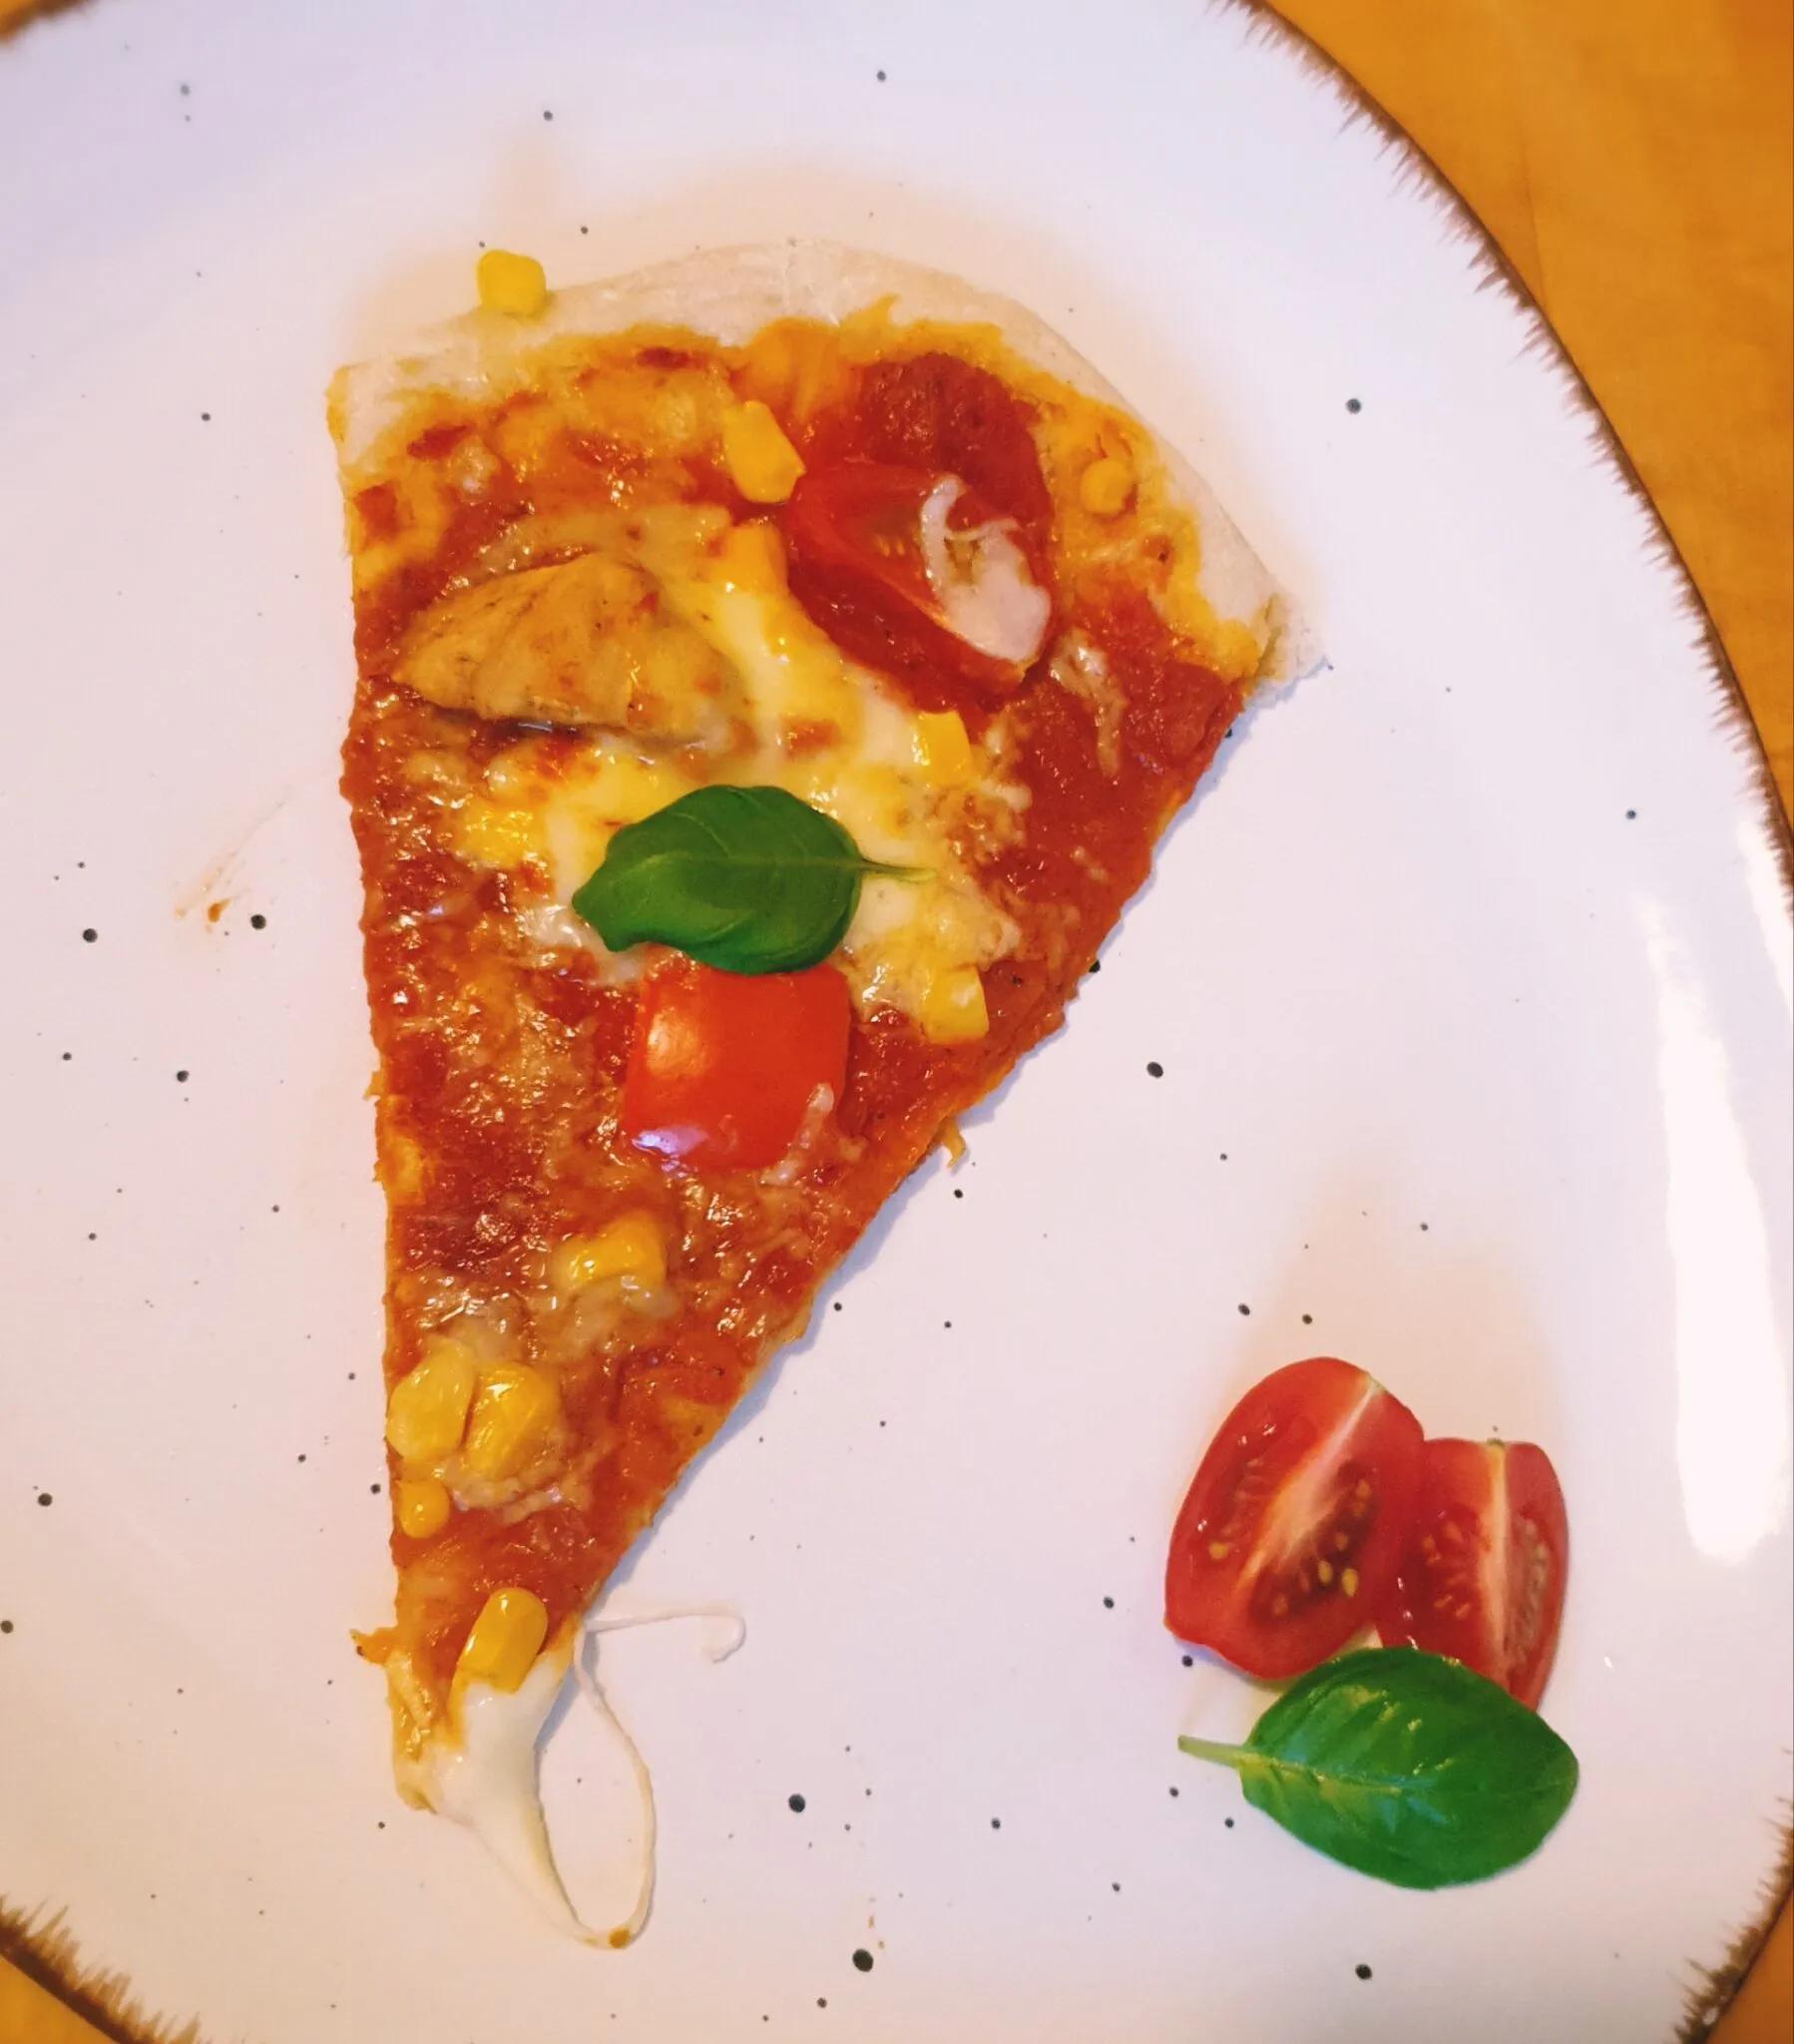 Pizzateig (Grundrezept) - Bellerie-blog